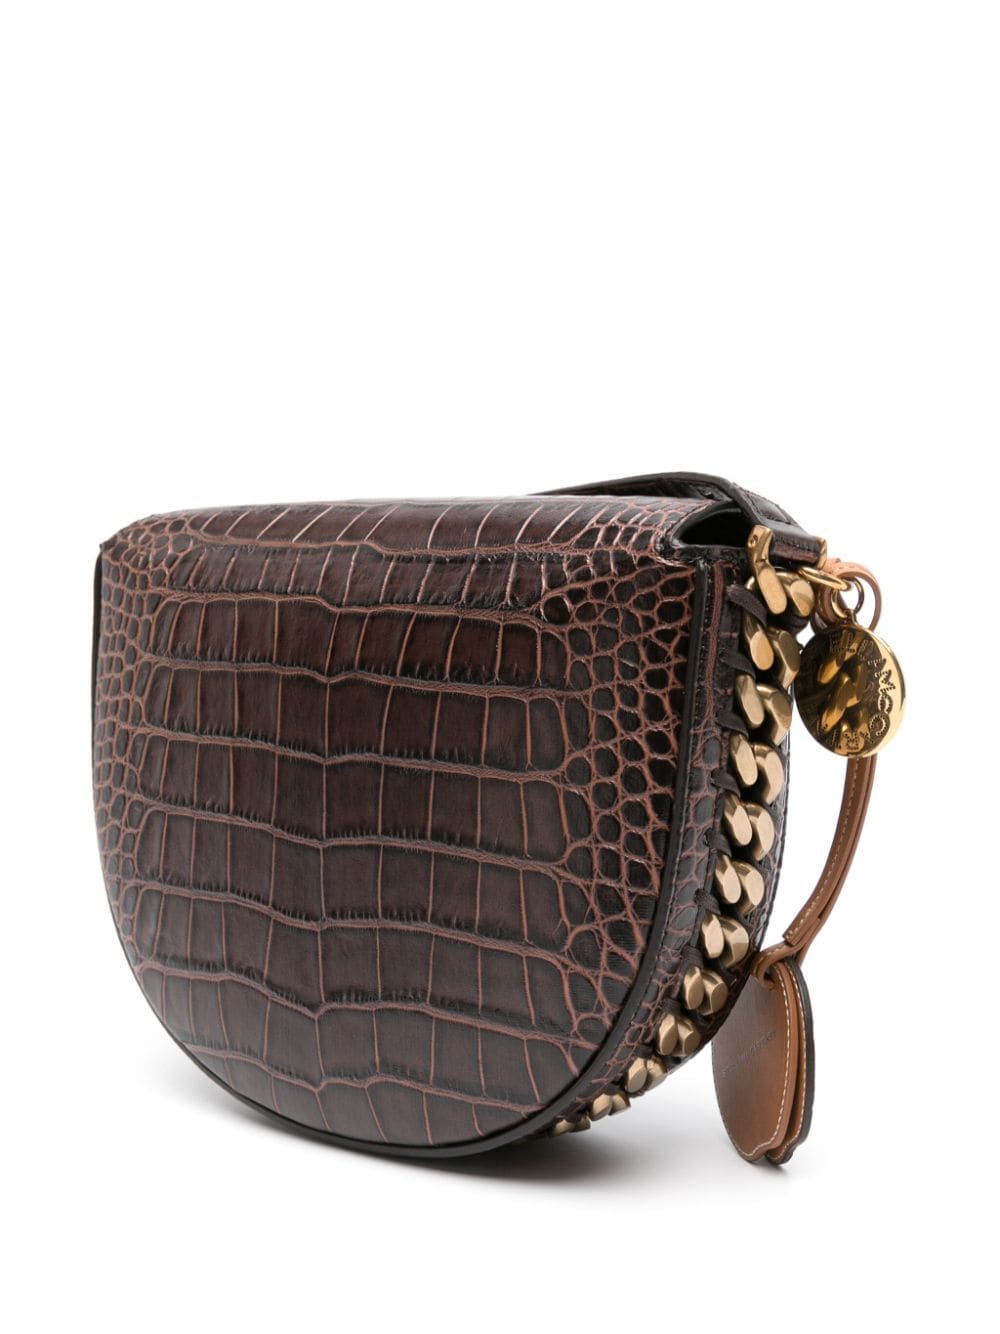 STELLA MCCARTNEY Luxurious Crocodile Embossed Shoulder Handbag for Women in Chocolate Brown